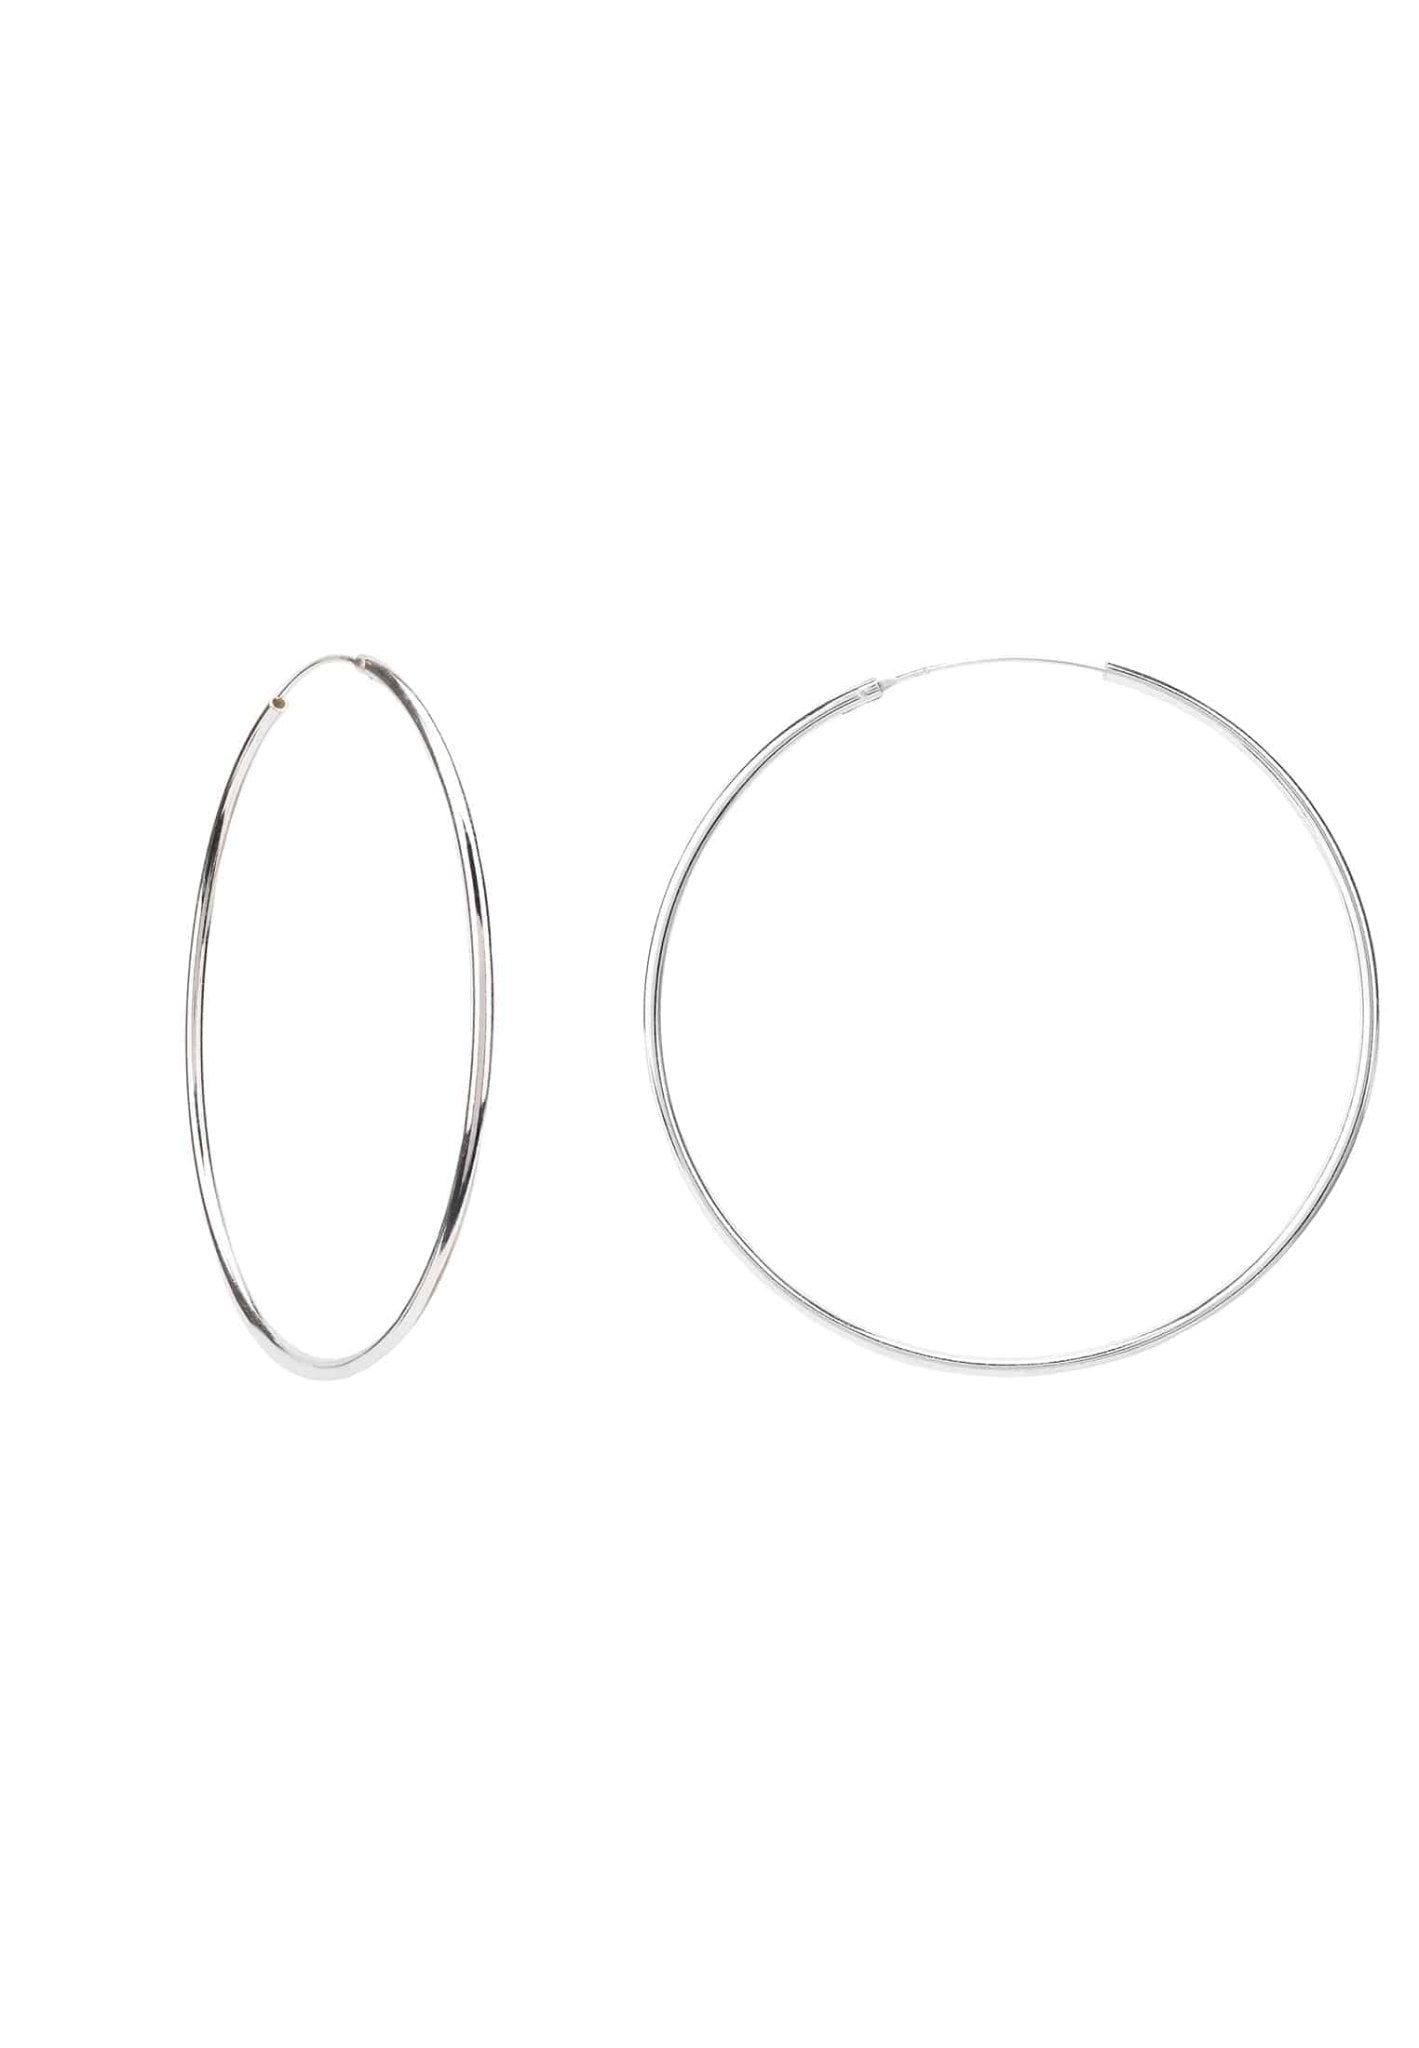 Extra Large Silver Hoop Earrings - LATELITA Earrings